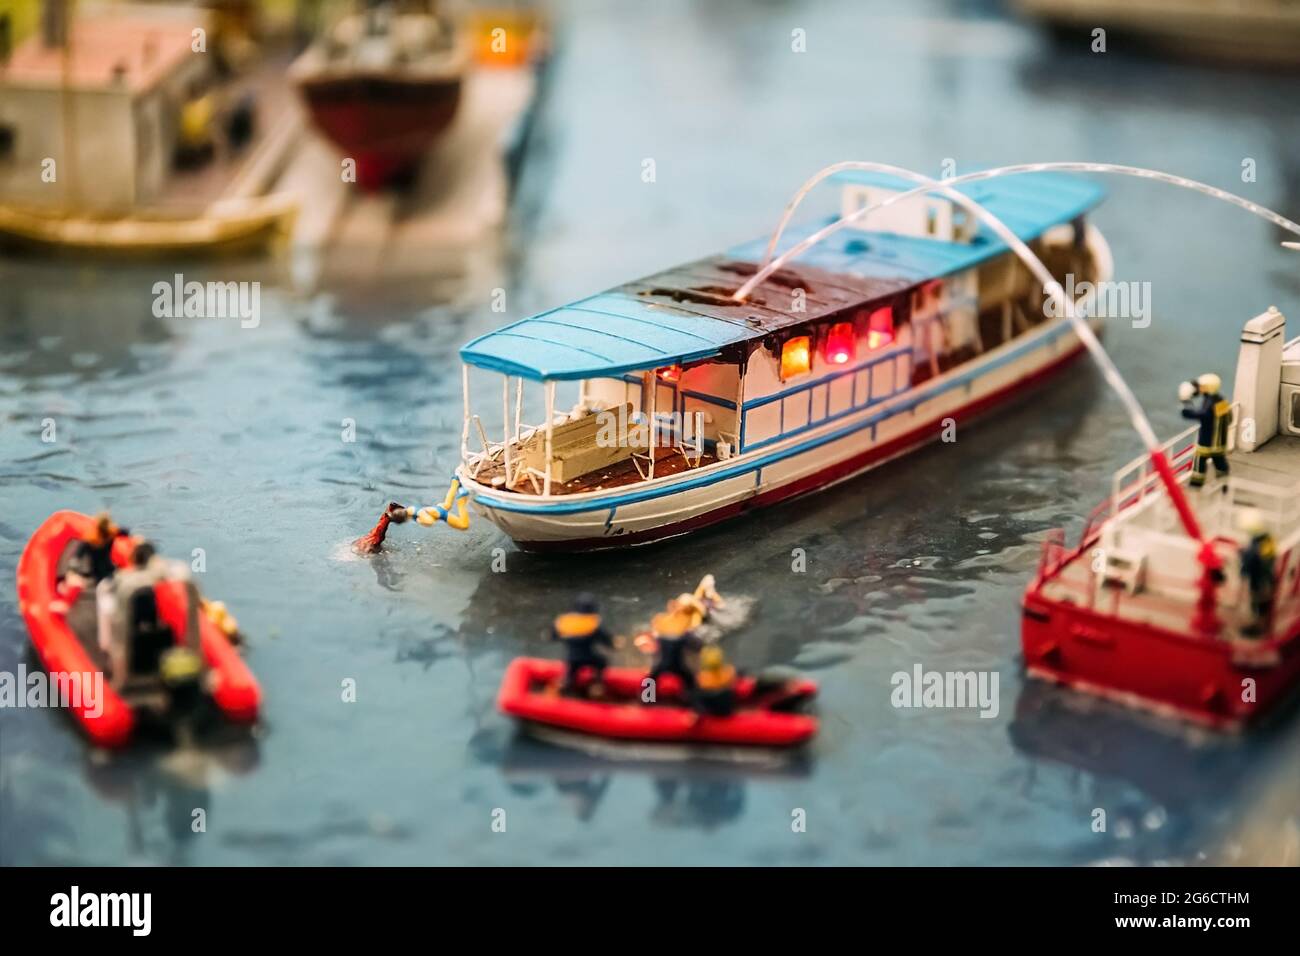 Personnes miniatures. Des modèles miniatures de pompiers éteignent un feu sur un bateau sur l'eau. Modèles miniatures comme un passe-temps. Maquette. Banque D'Images